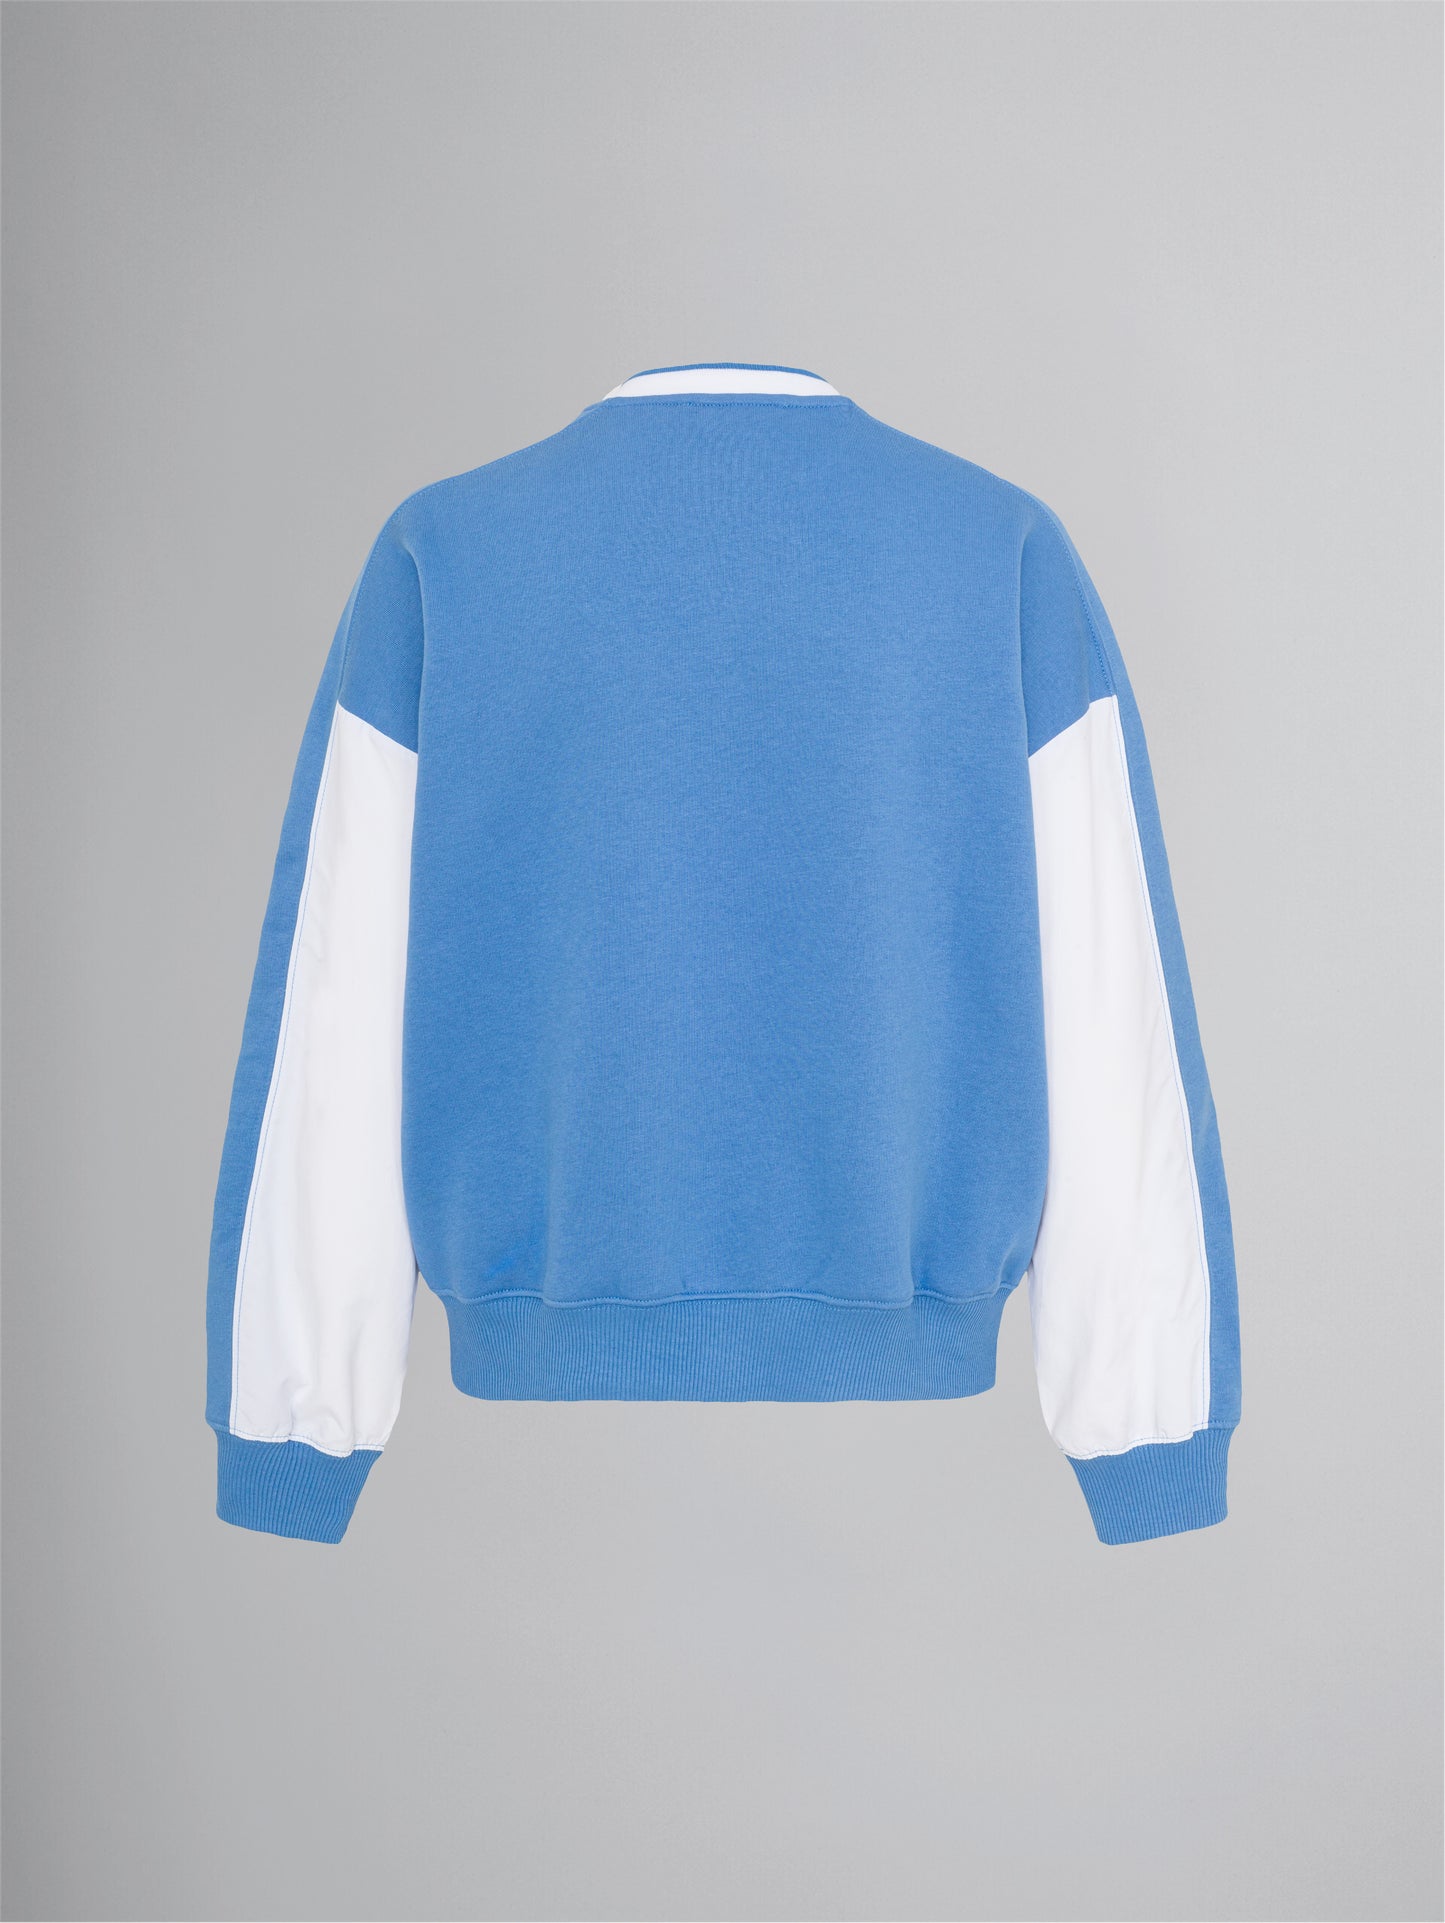 N A C H H A L T I G *  Blouson Sweater - sky blue